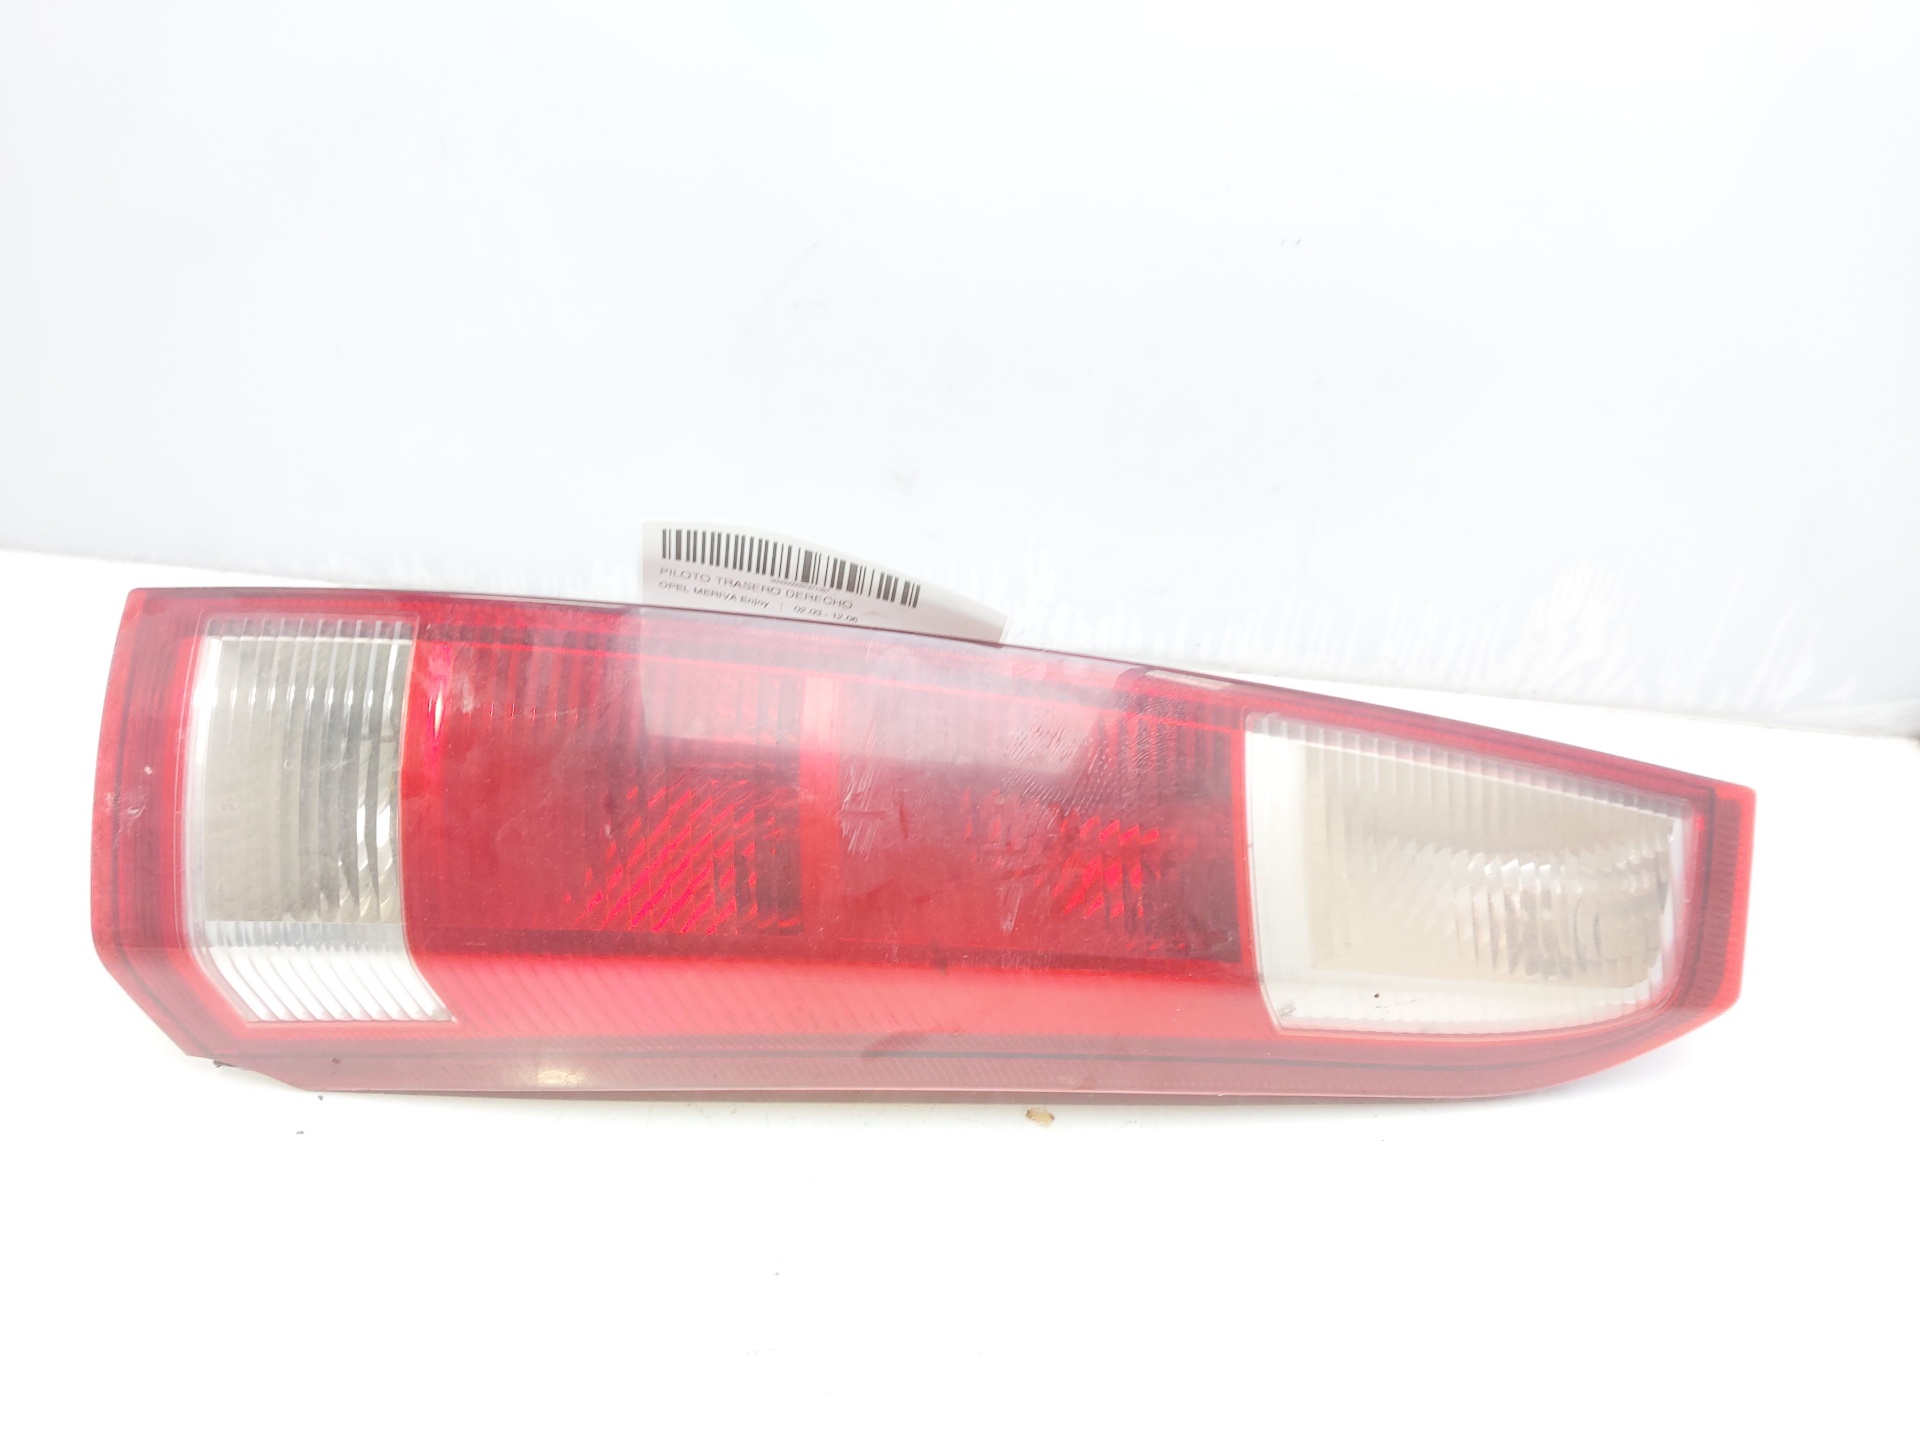 OPEL Meriva 1 generation (2002-2010) Rear Right Taillight Lamp 13203392 22484837